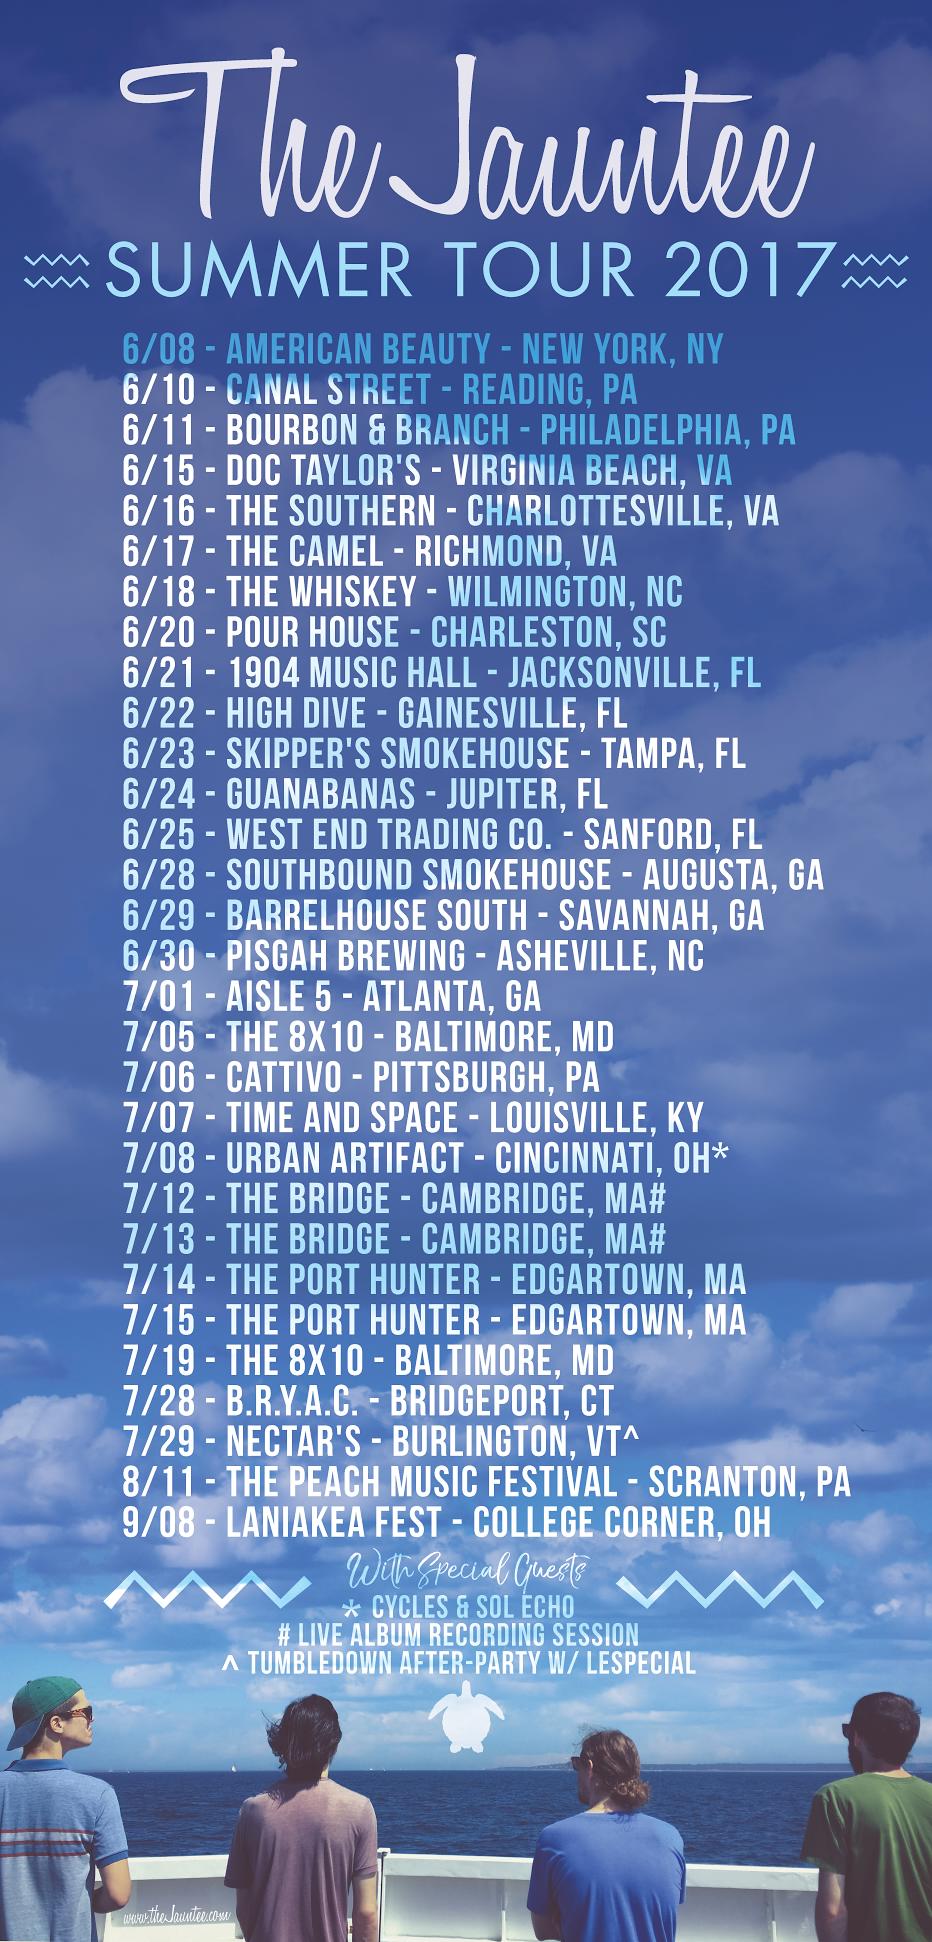 The Jauntee 2017 Summer Tour Dates